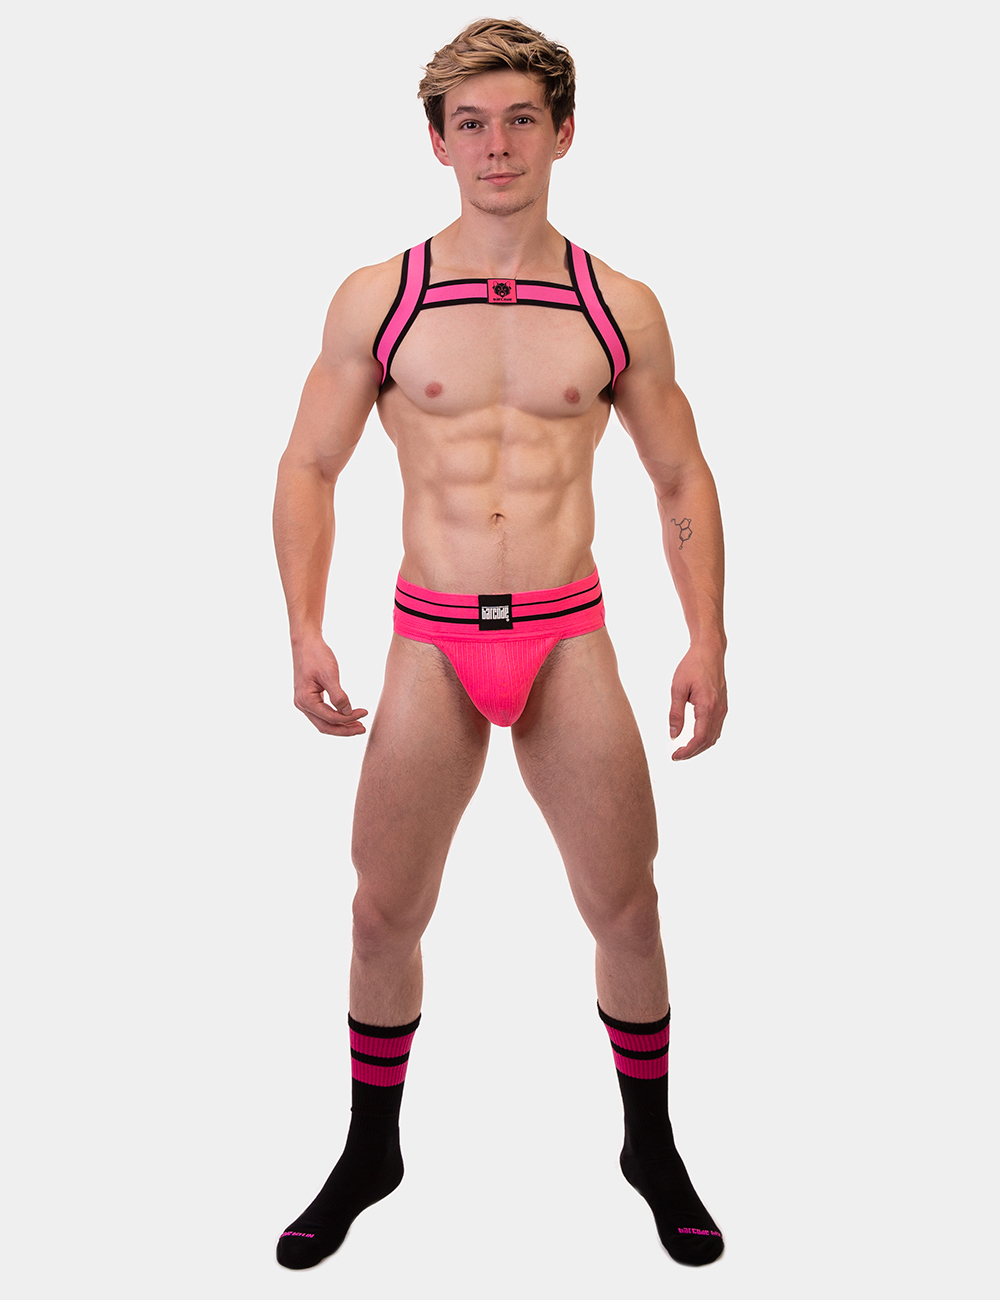 Harness von Barcode Berlin Model " Harness Colin " Neonpink im Gaywear Fetisch Style